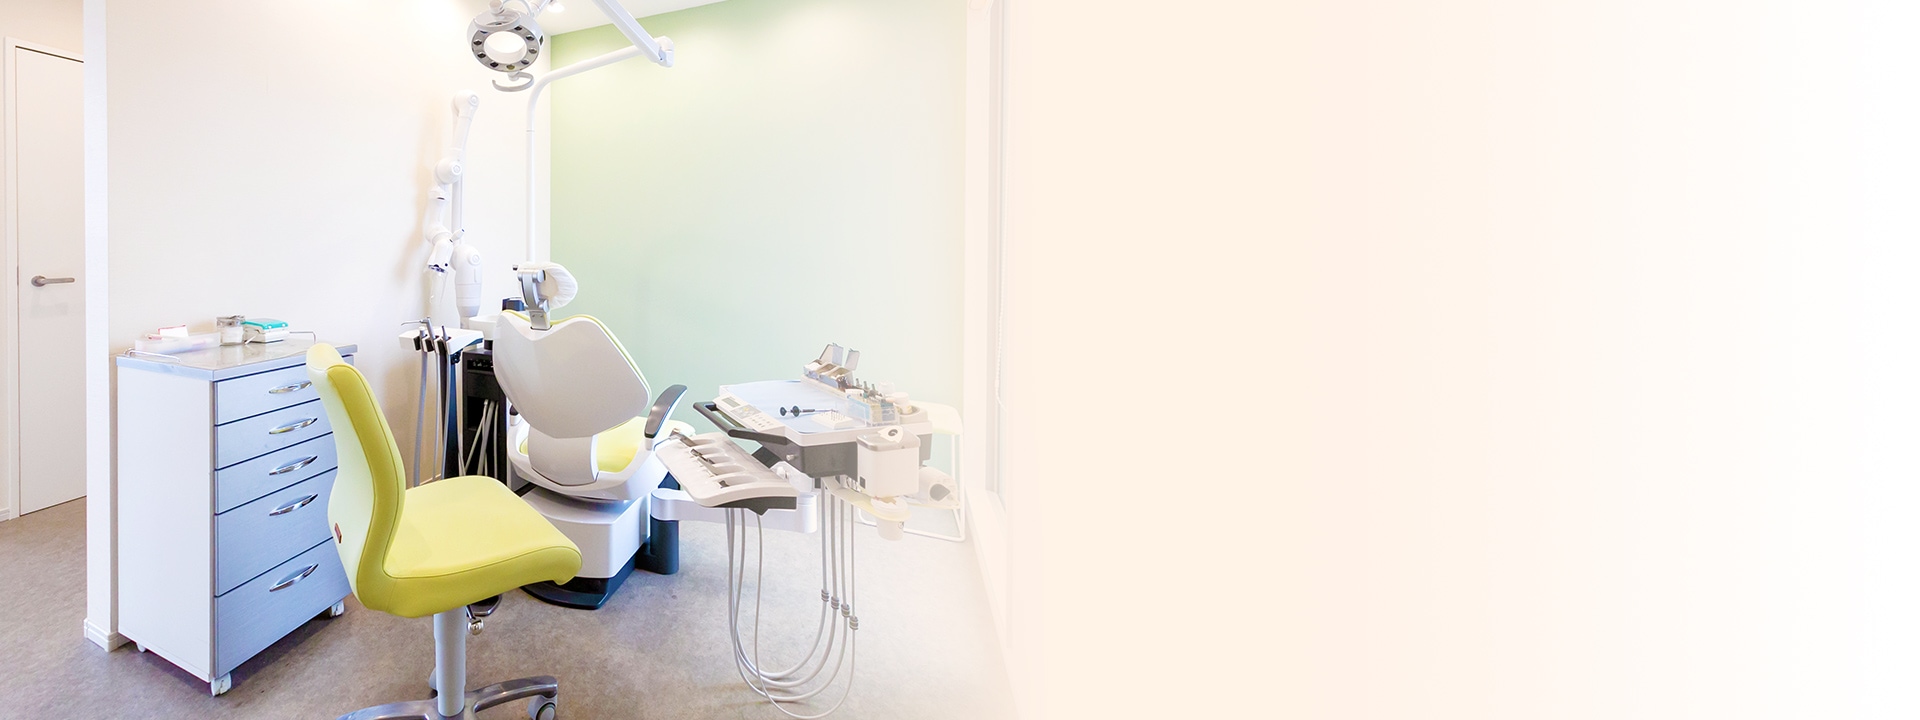 地域に根ざした歯科診療を目指し訪問診療（往診）にも積極的に取り組んでいます。